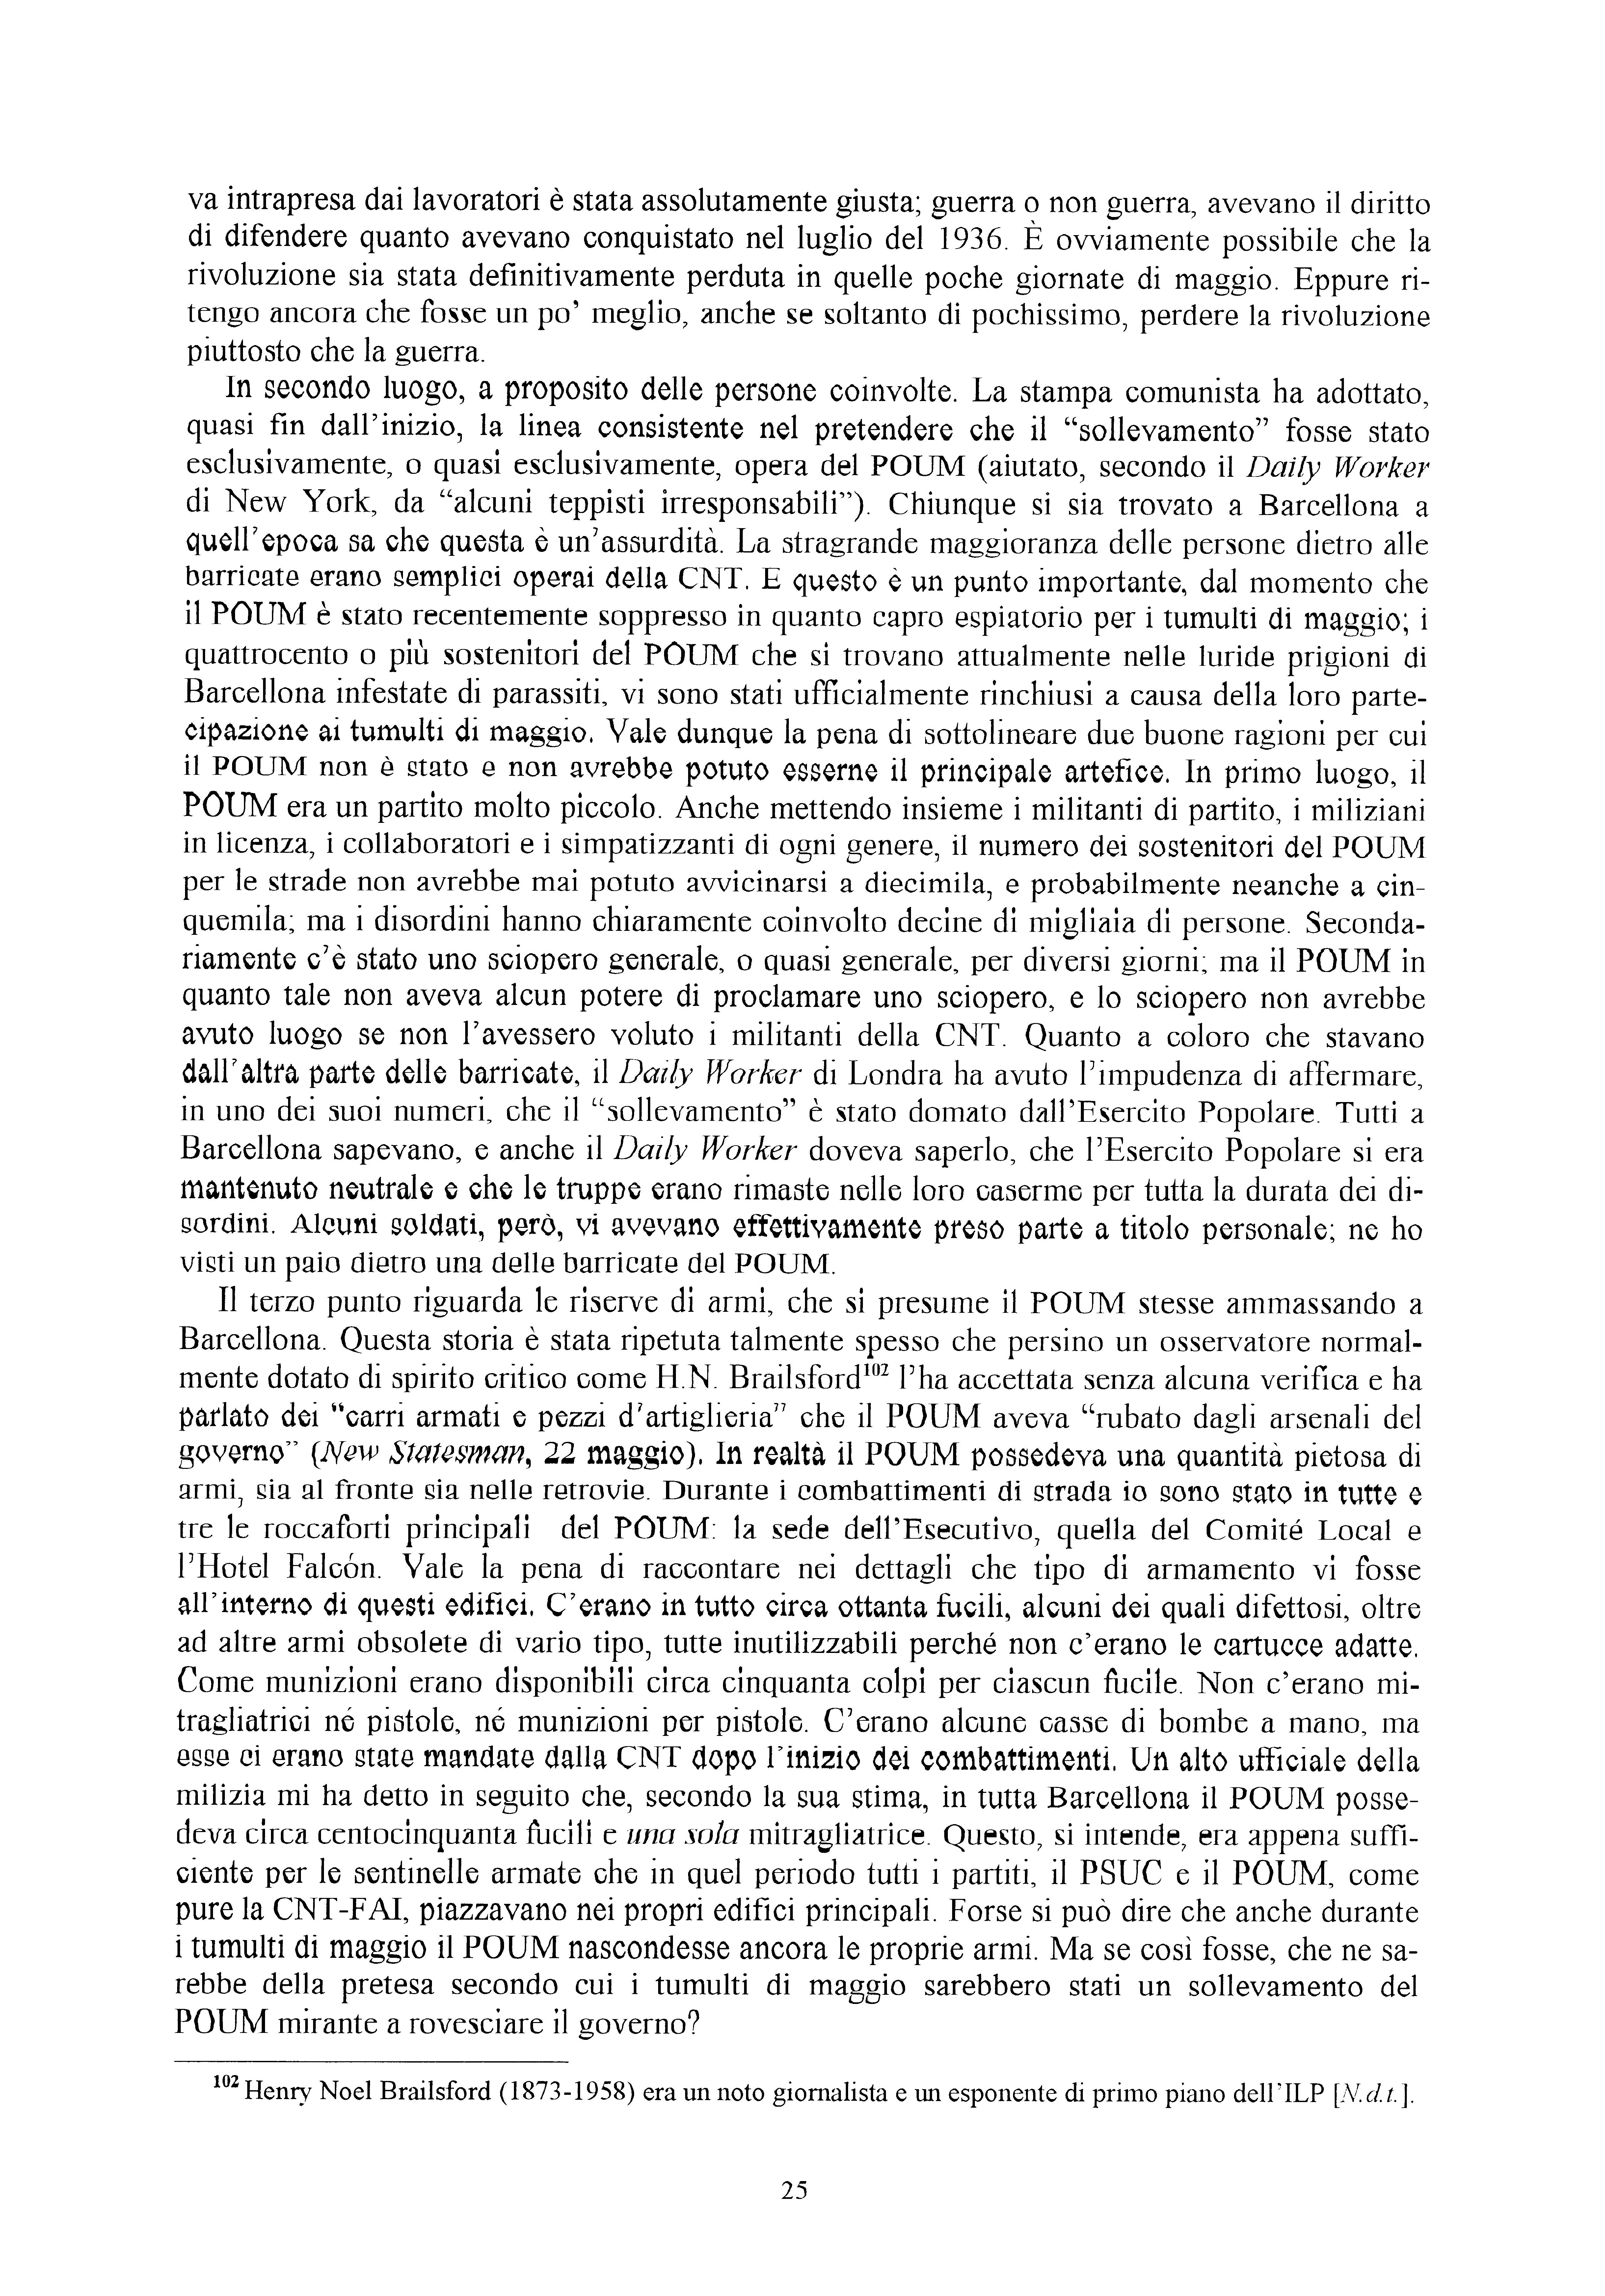 Quaderno Pietro Tresso n. 13 - pag. 26